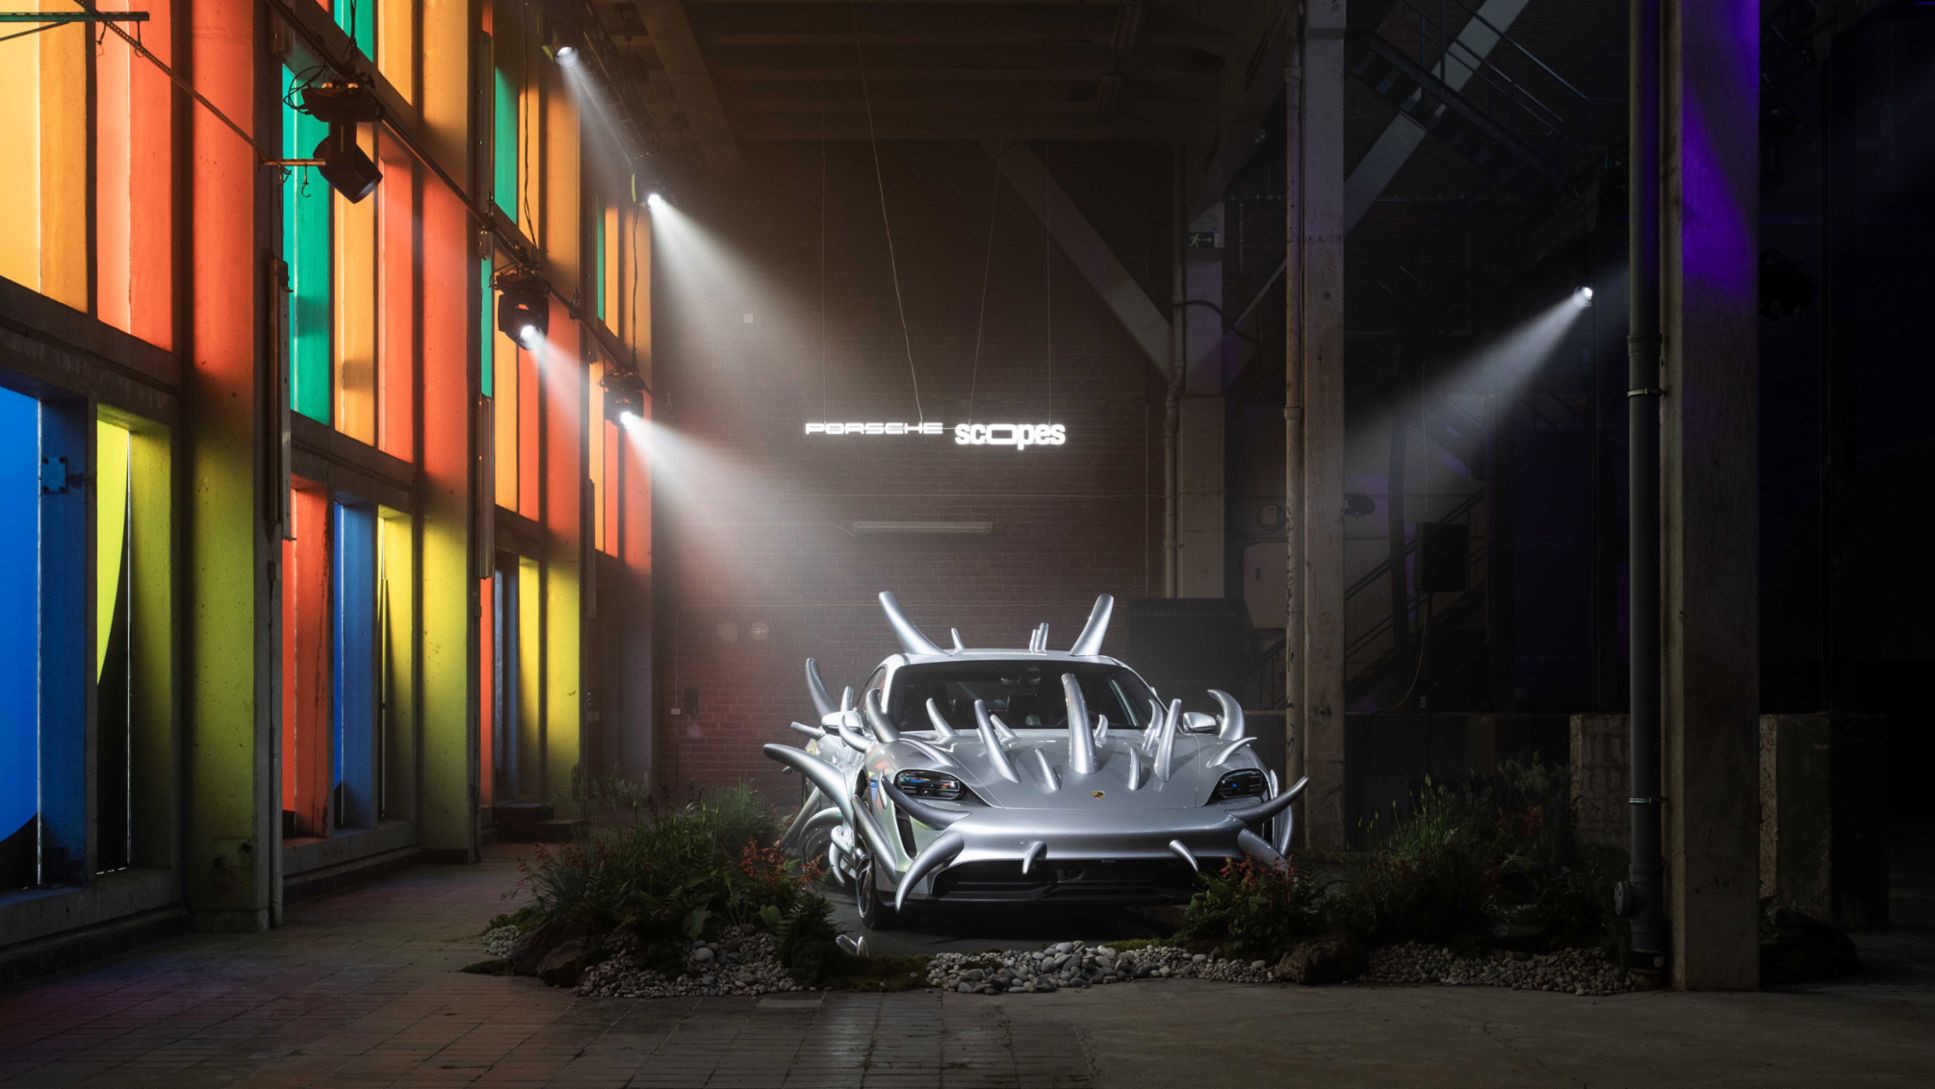 Porsche Taycan art car, Porsche SCOPES, Stockholm, 2023, Porsche AG